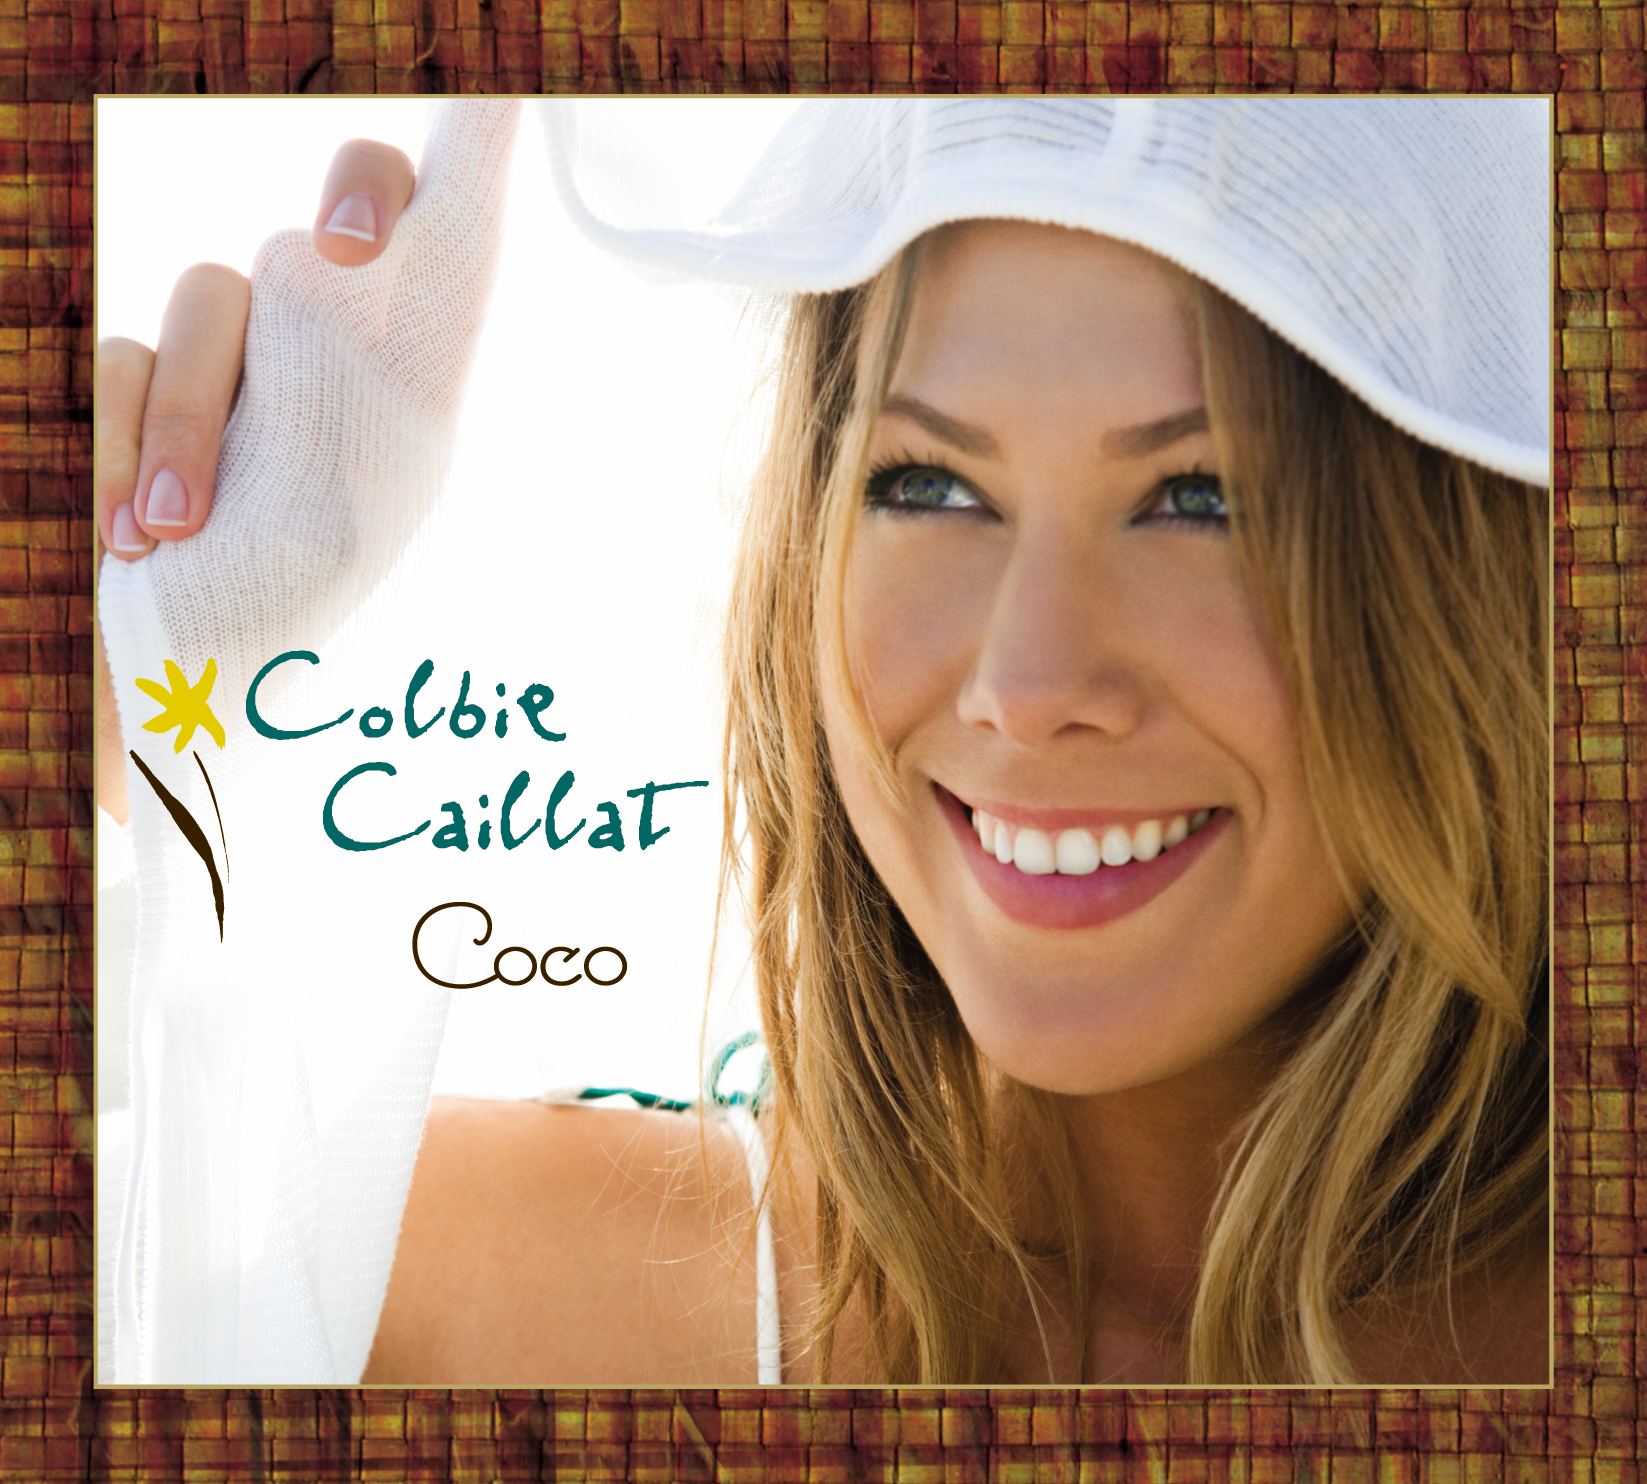 ColbieC_Coco_CoverAr_Source_1000065428.png